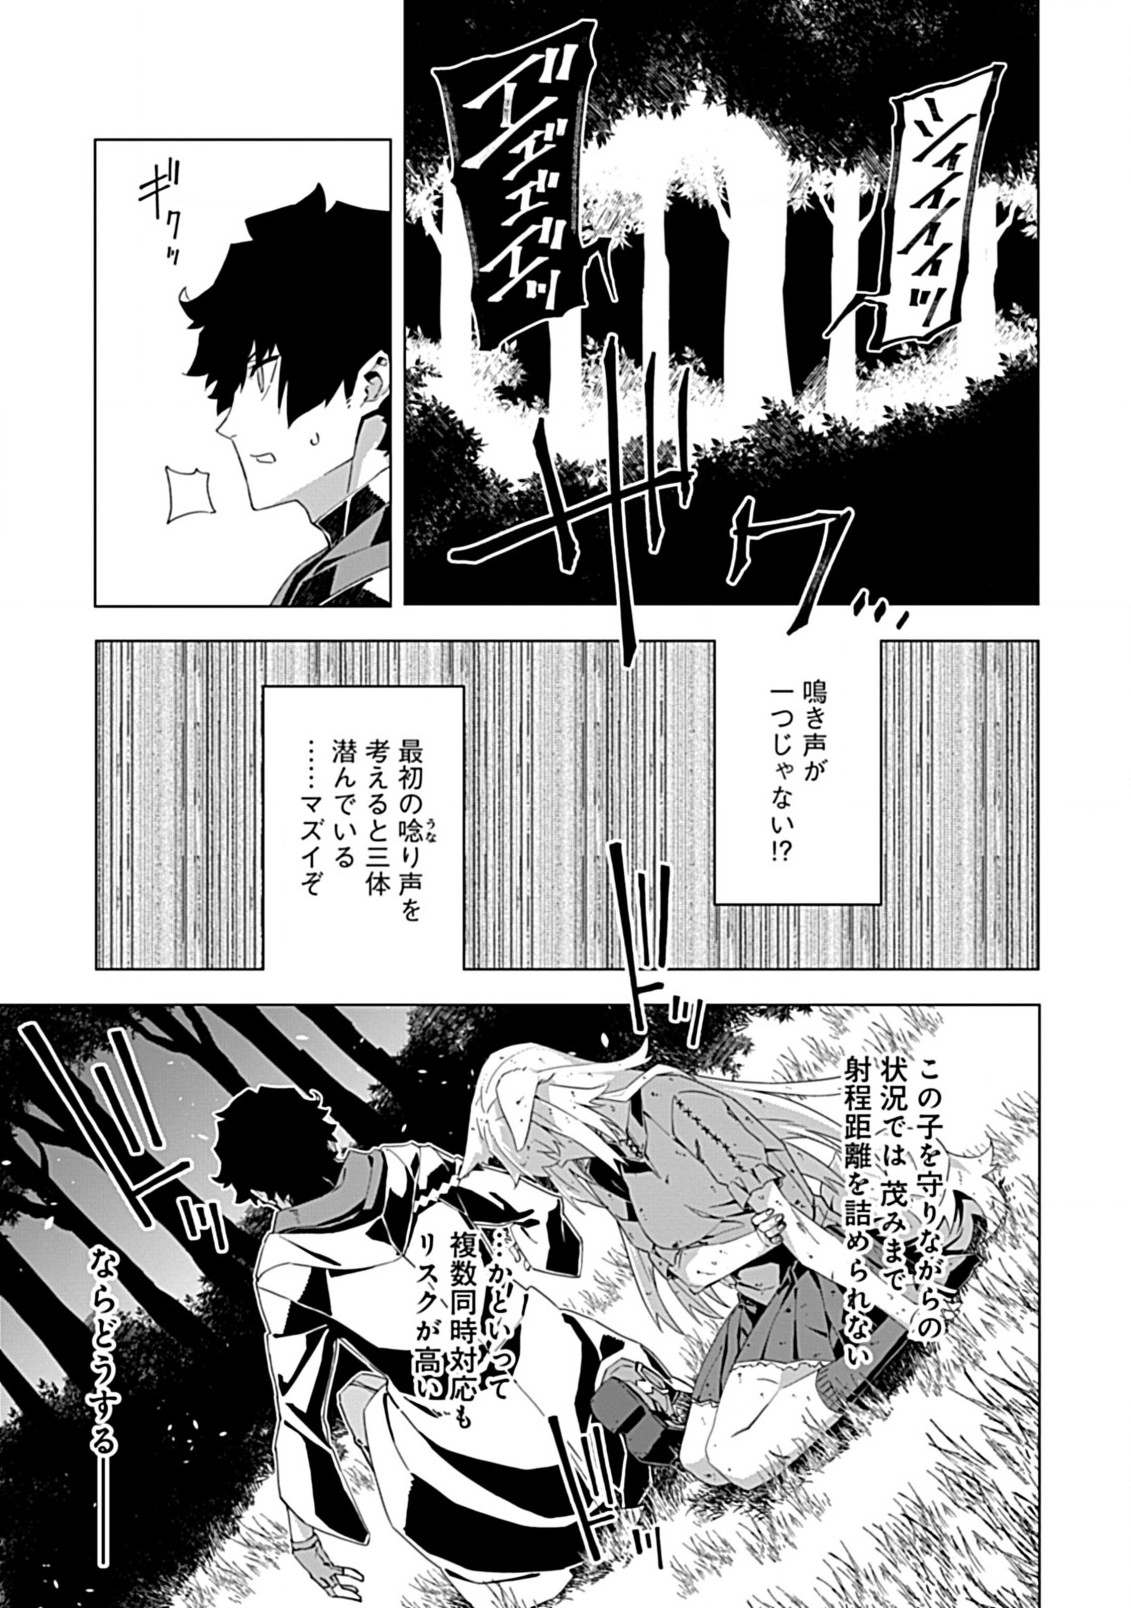 Sokushi to Hametsu no Saijaku Majutsushi - Chapter 7 - Page 3